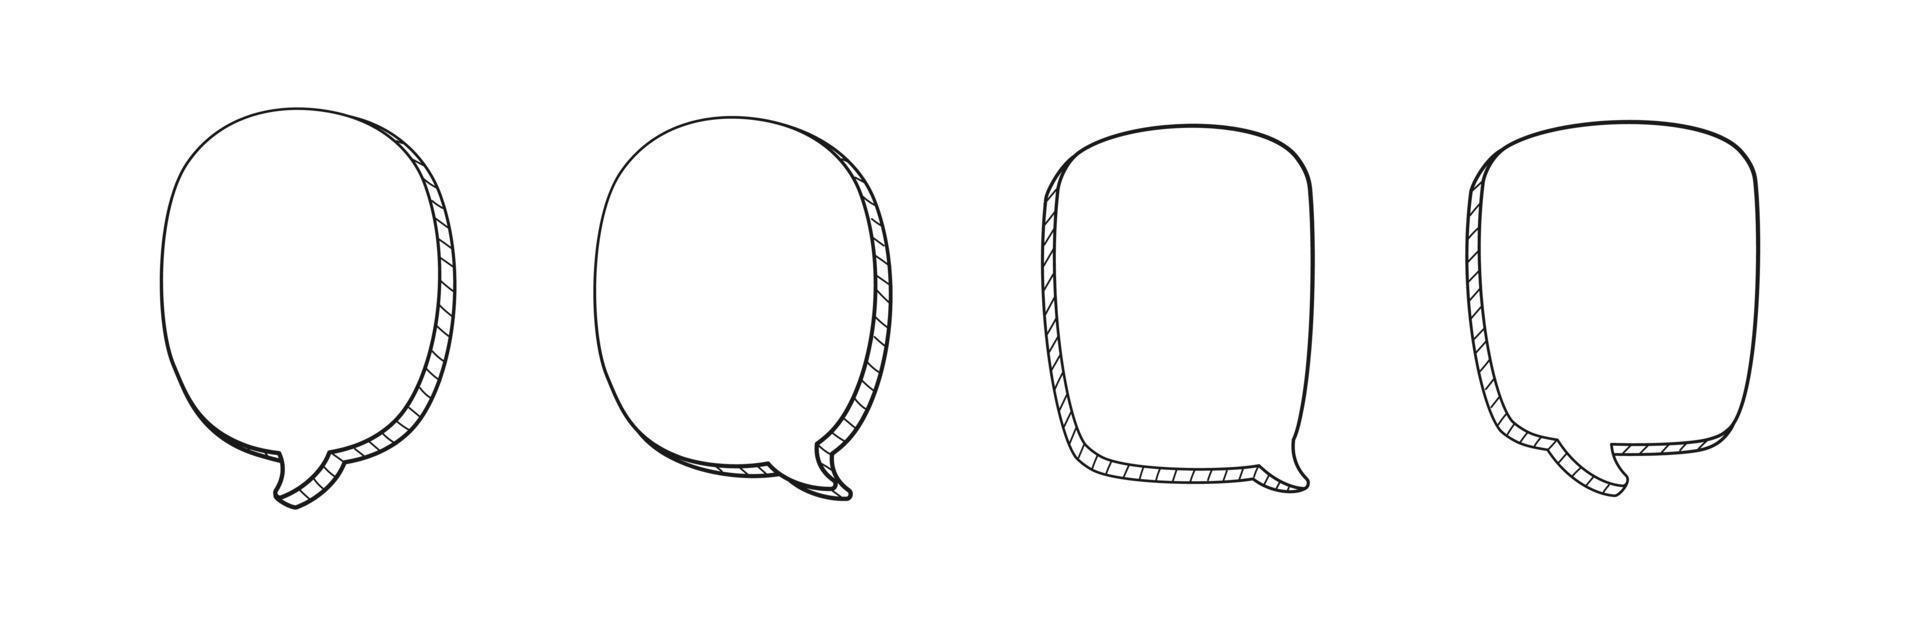 grappig 3d tekening toespraak bubbel schets verzameling reeks vector illustratie